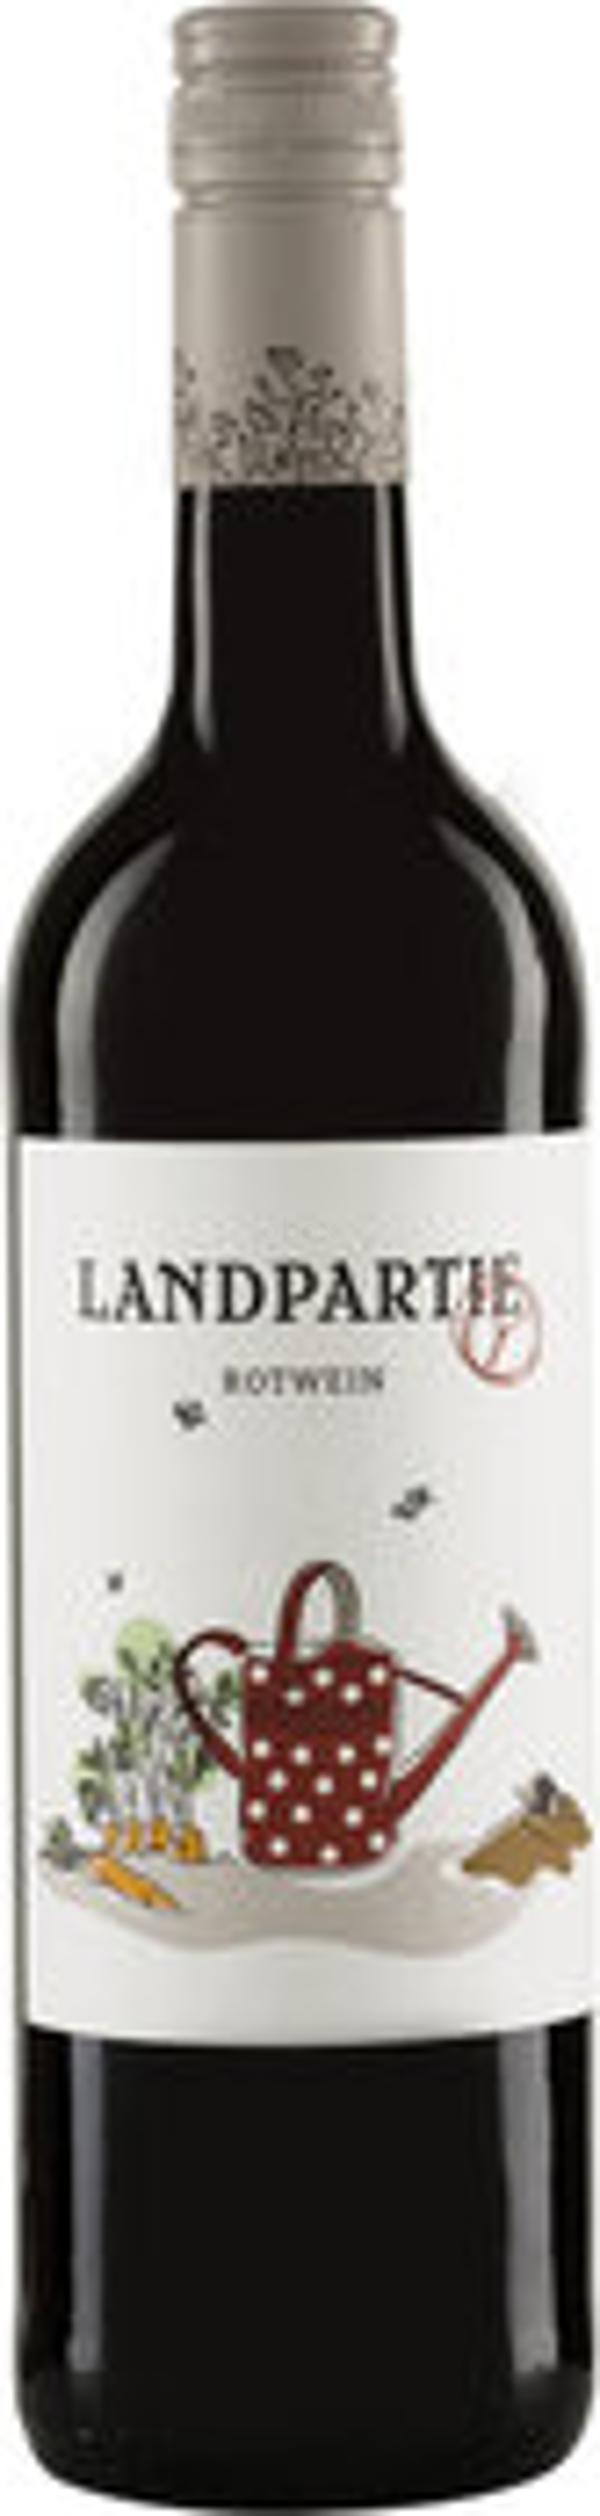 Produktfoto zu Landpartie Rotwein Kiste 6*0,75L